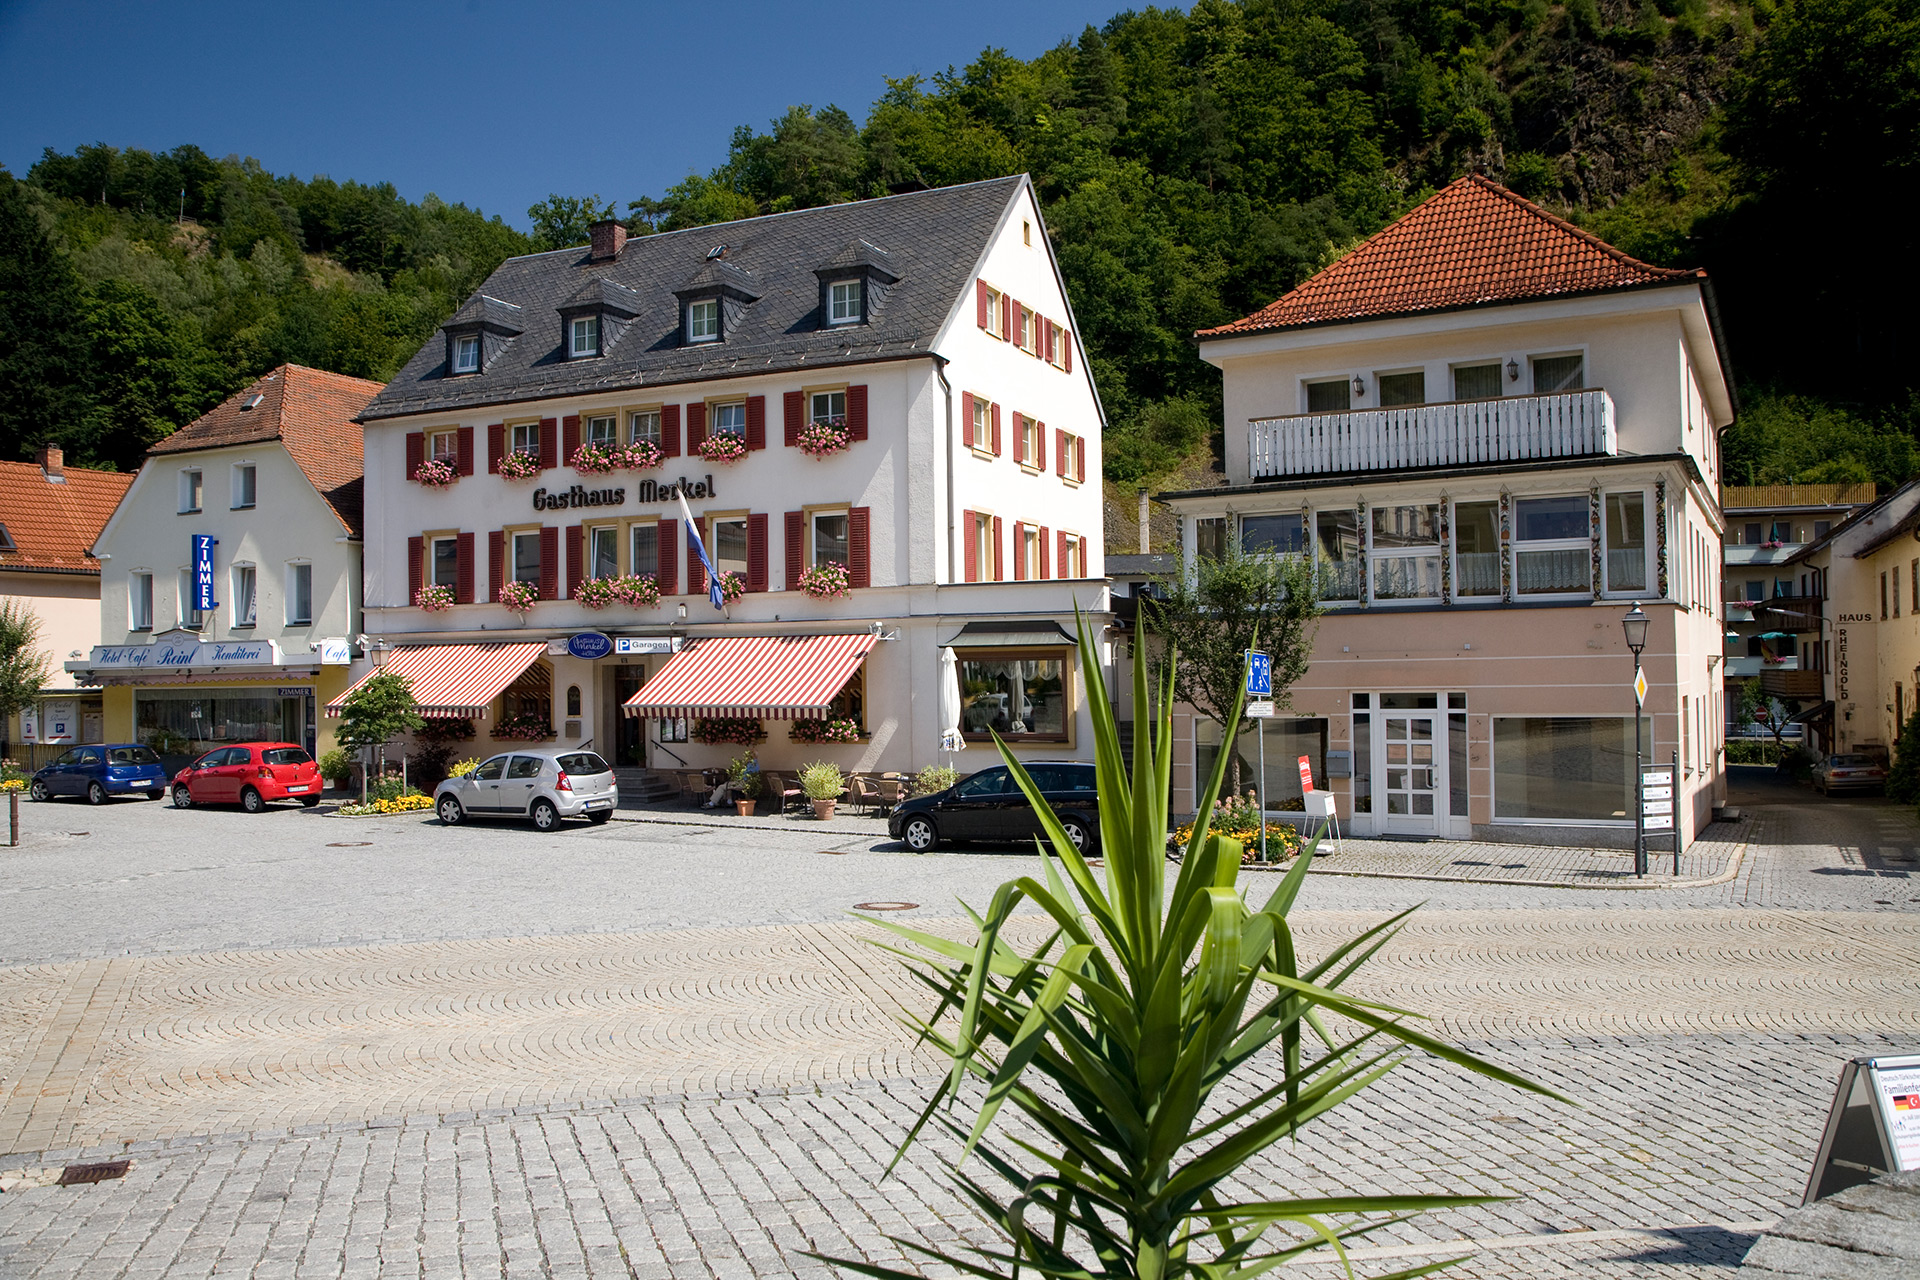 Gasthaus & Hotel Merkel in Bad Berneck